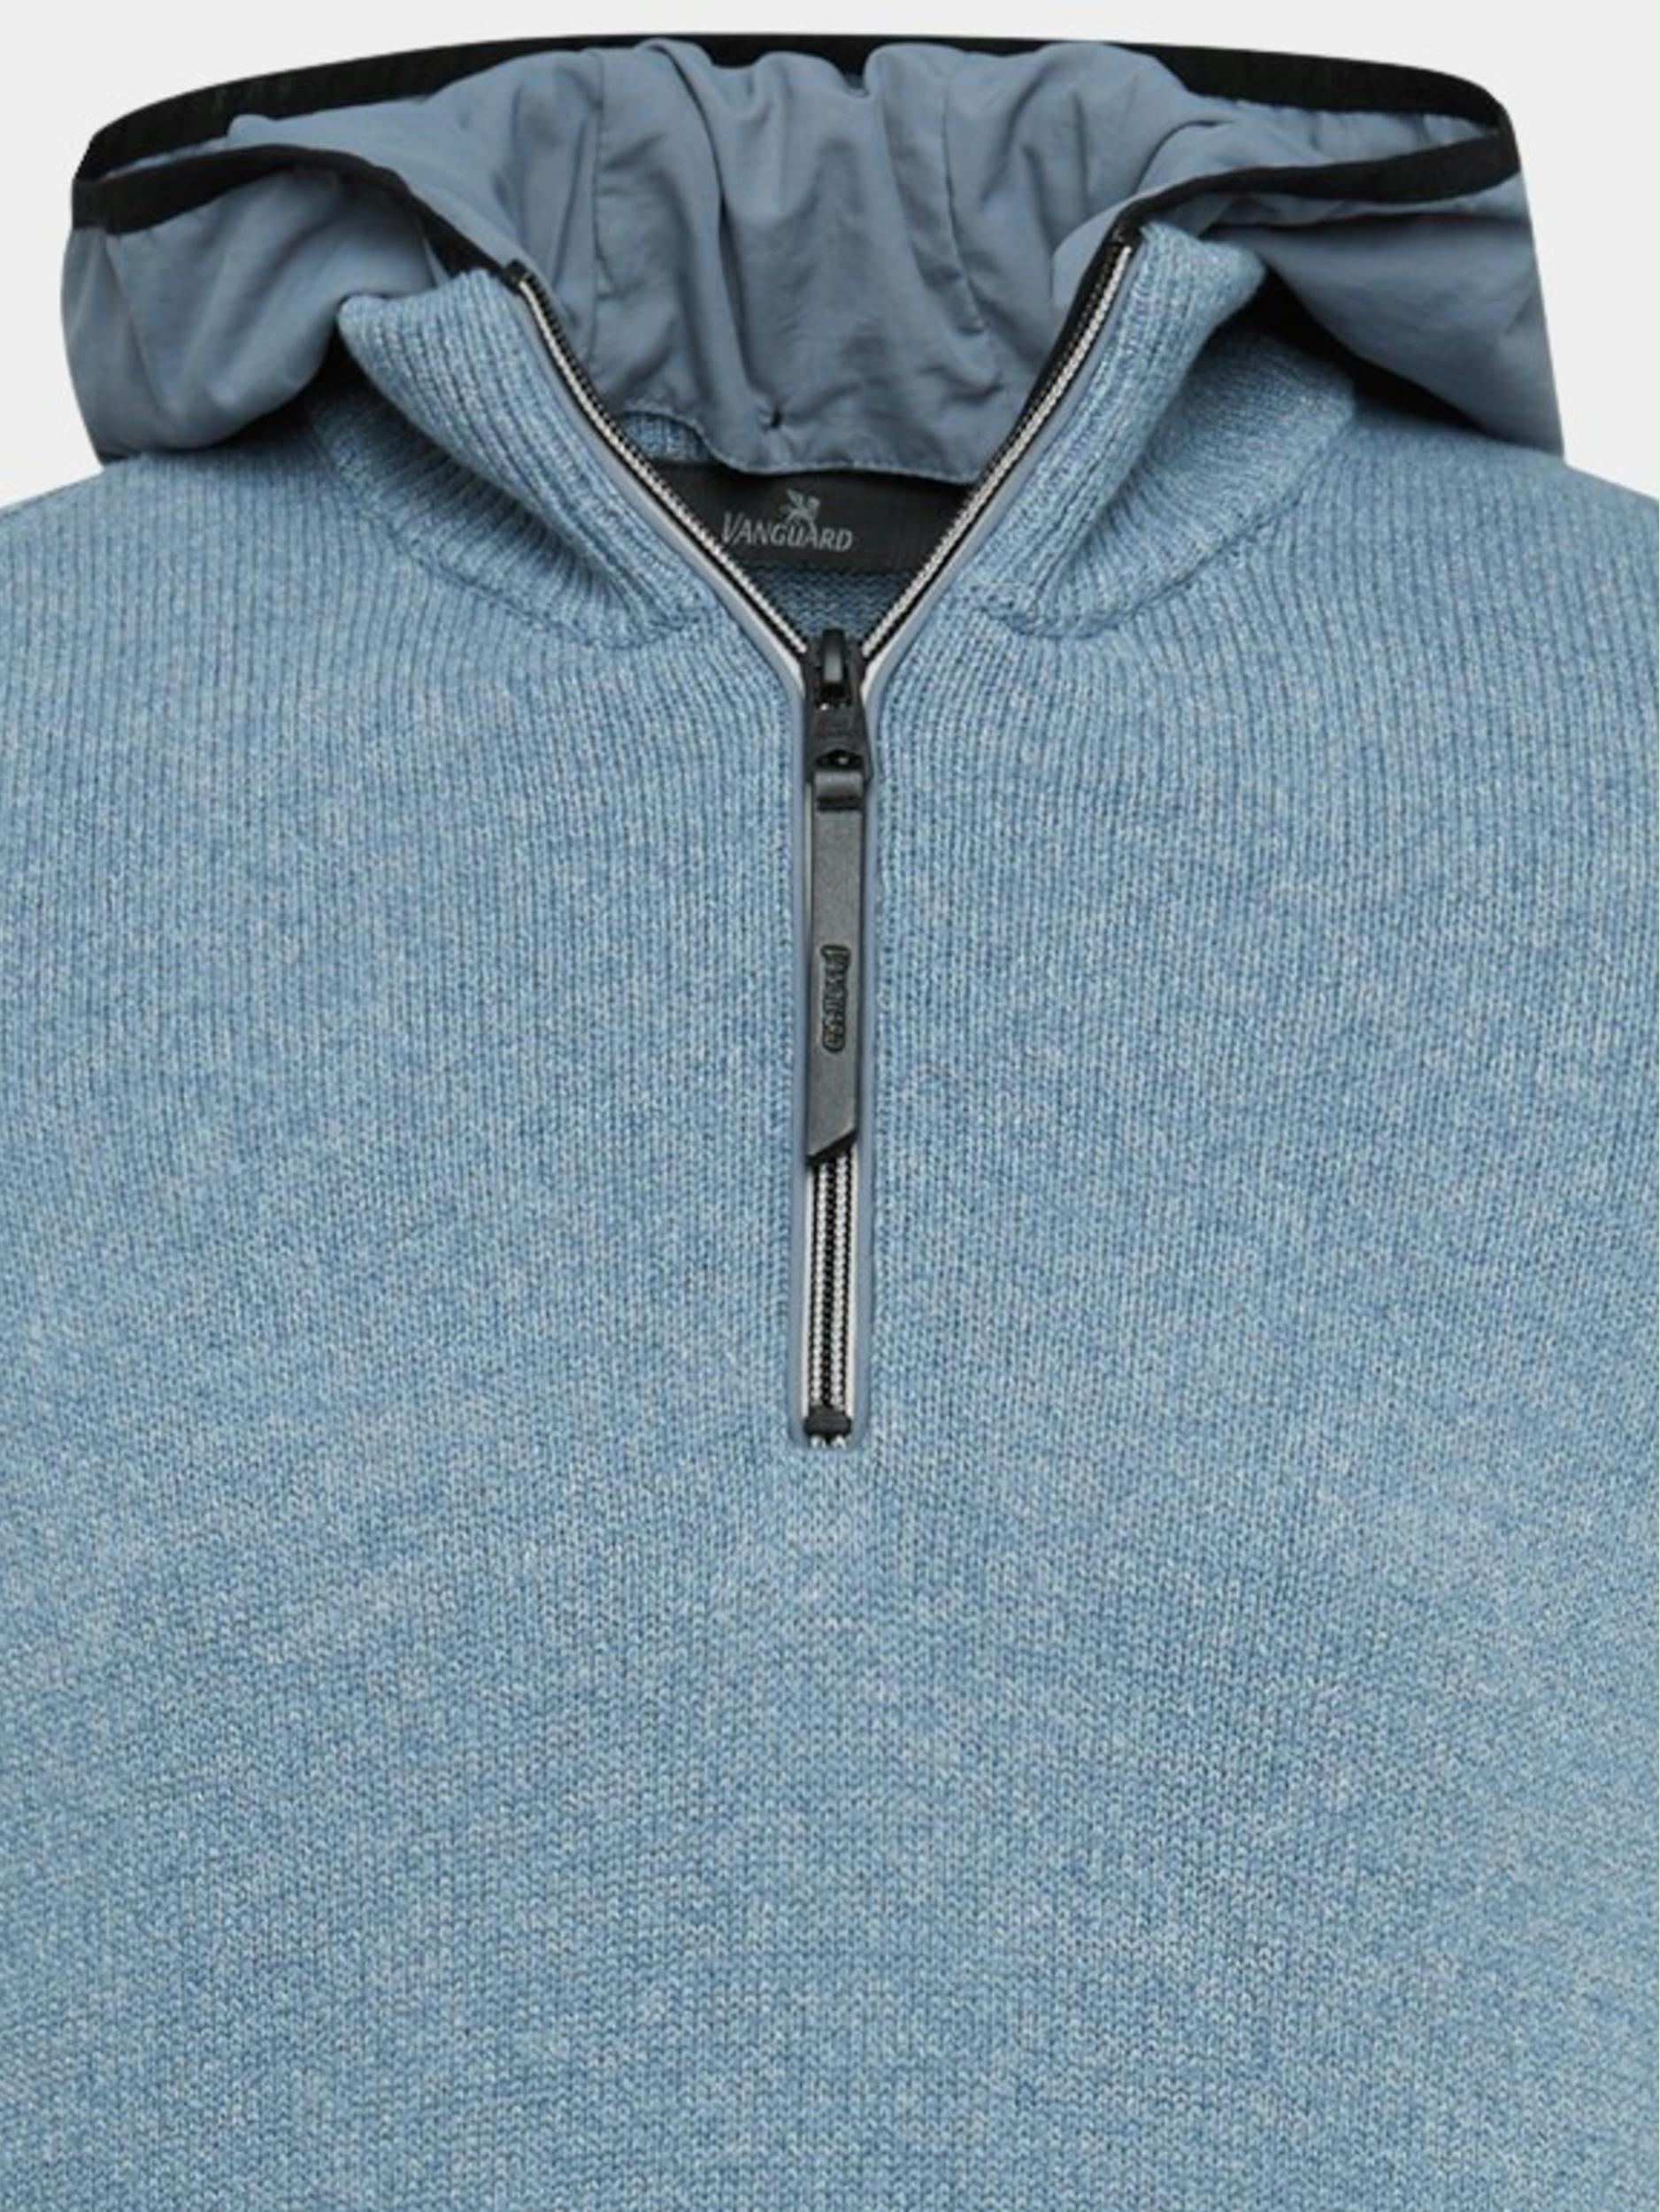 evolutie Detecteren ondernemen Vanguard Pullover Blauw Hooded Cotton Grindle VKW2211322/5413 | Bos Men Shop